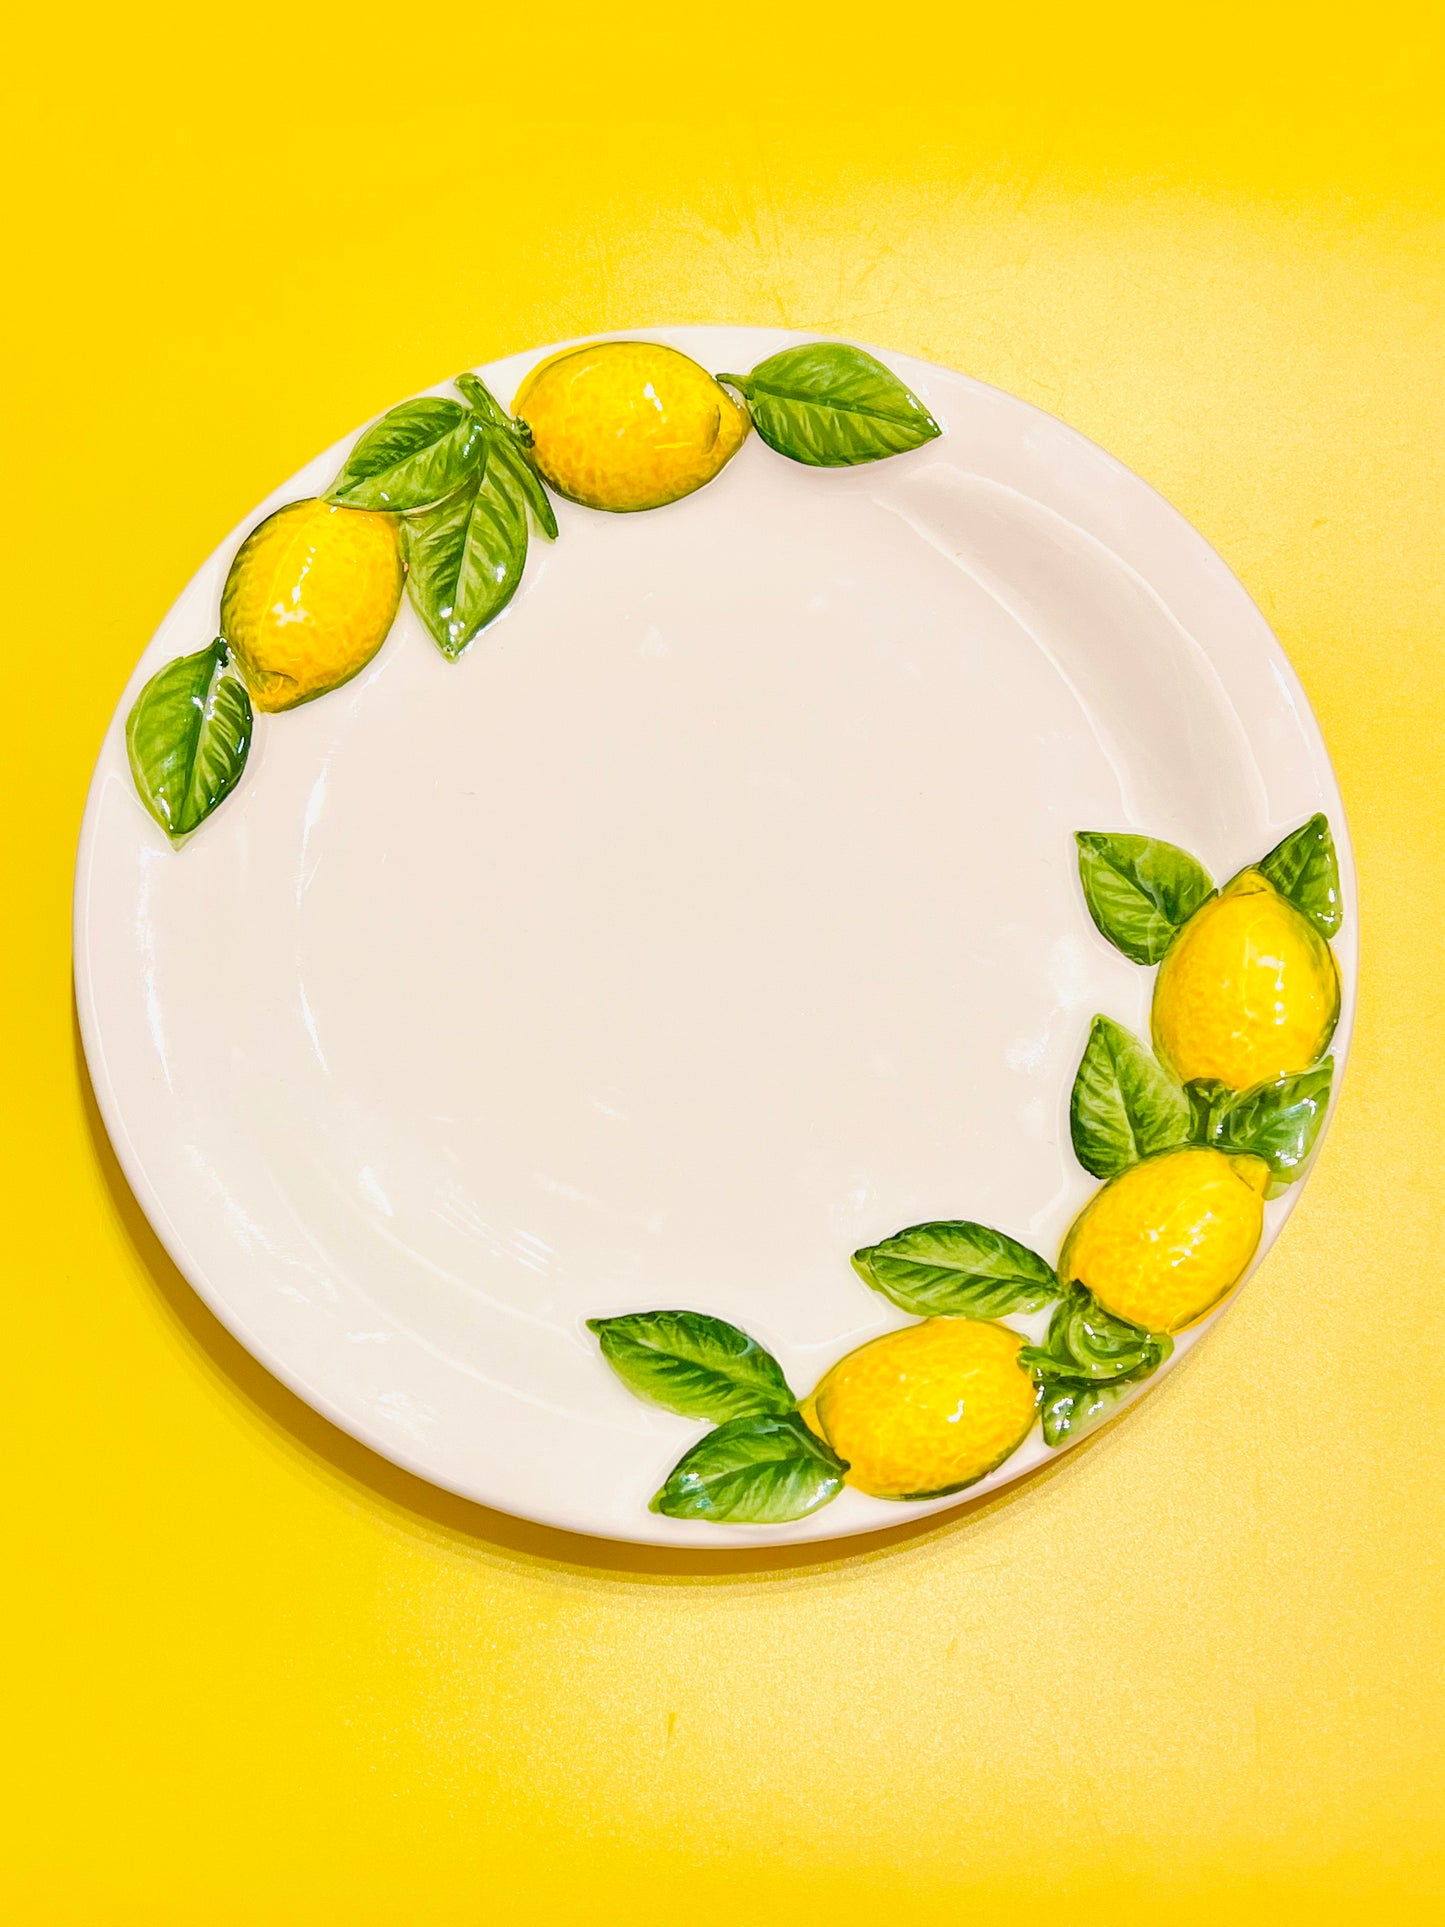 Plato limones